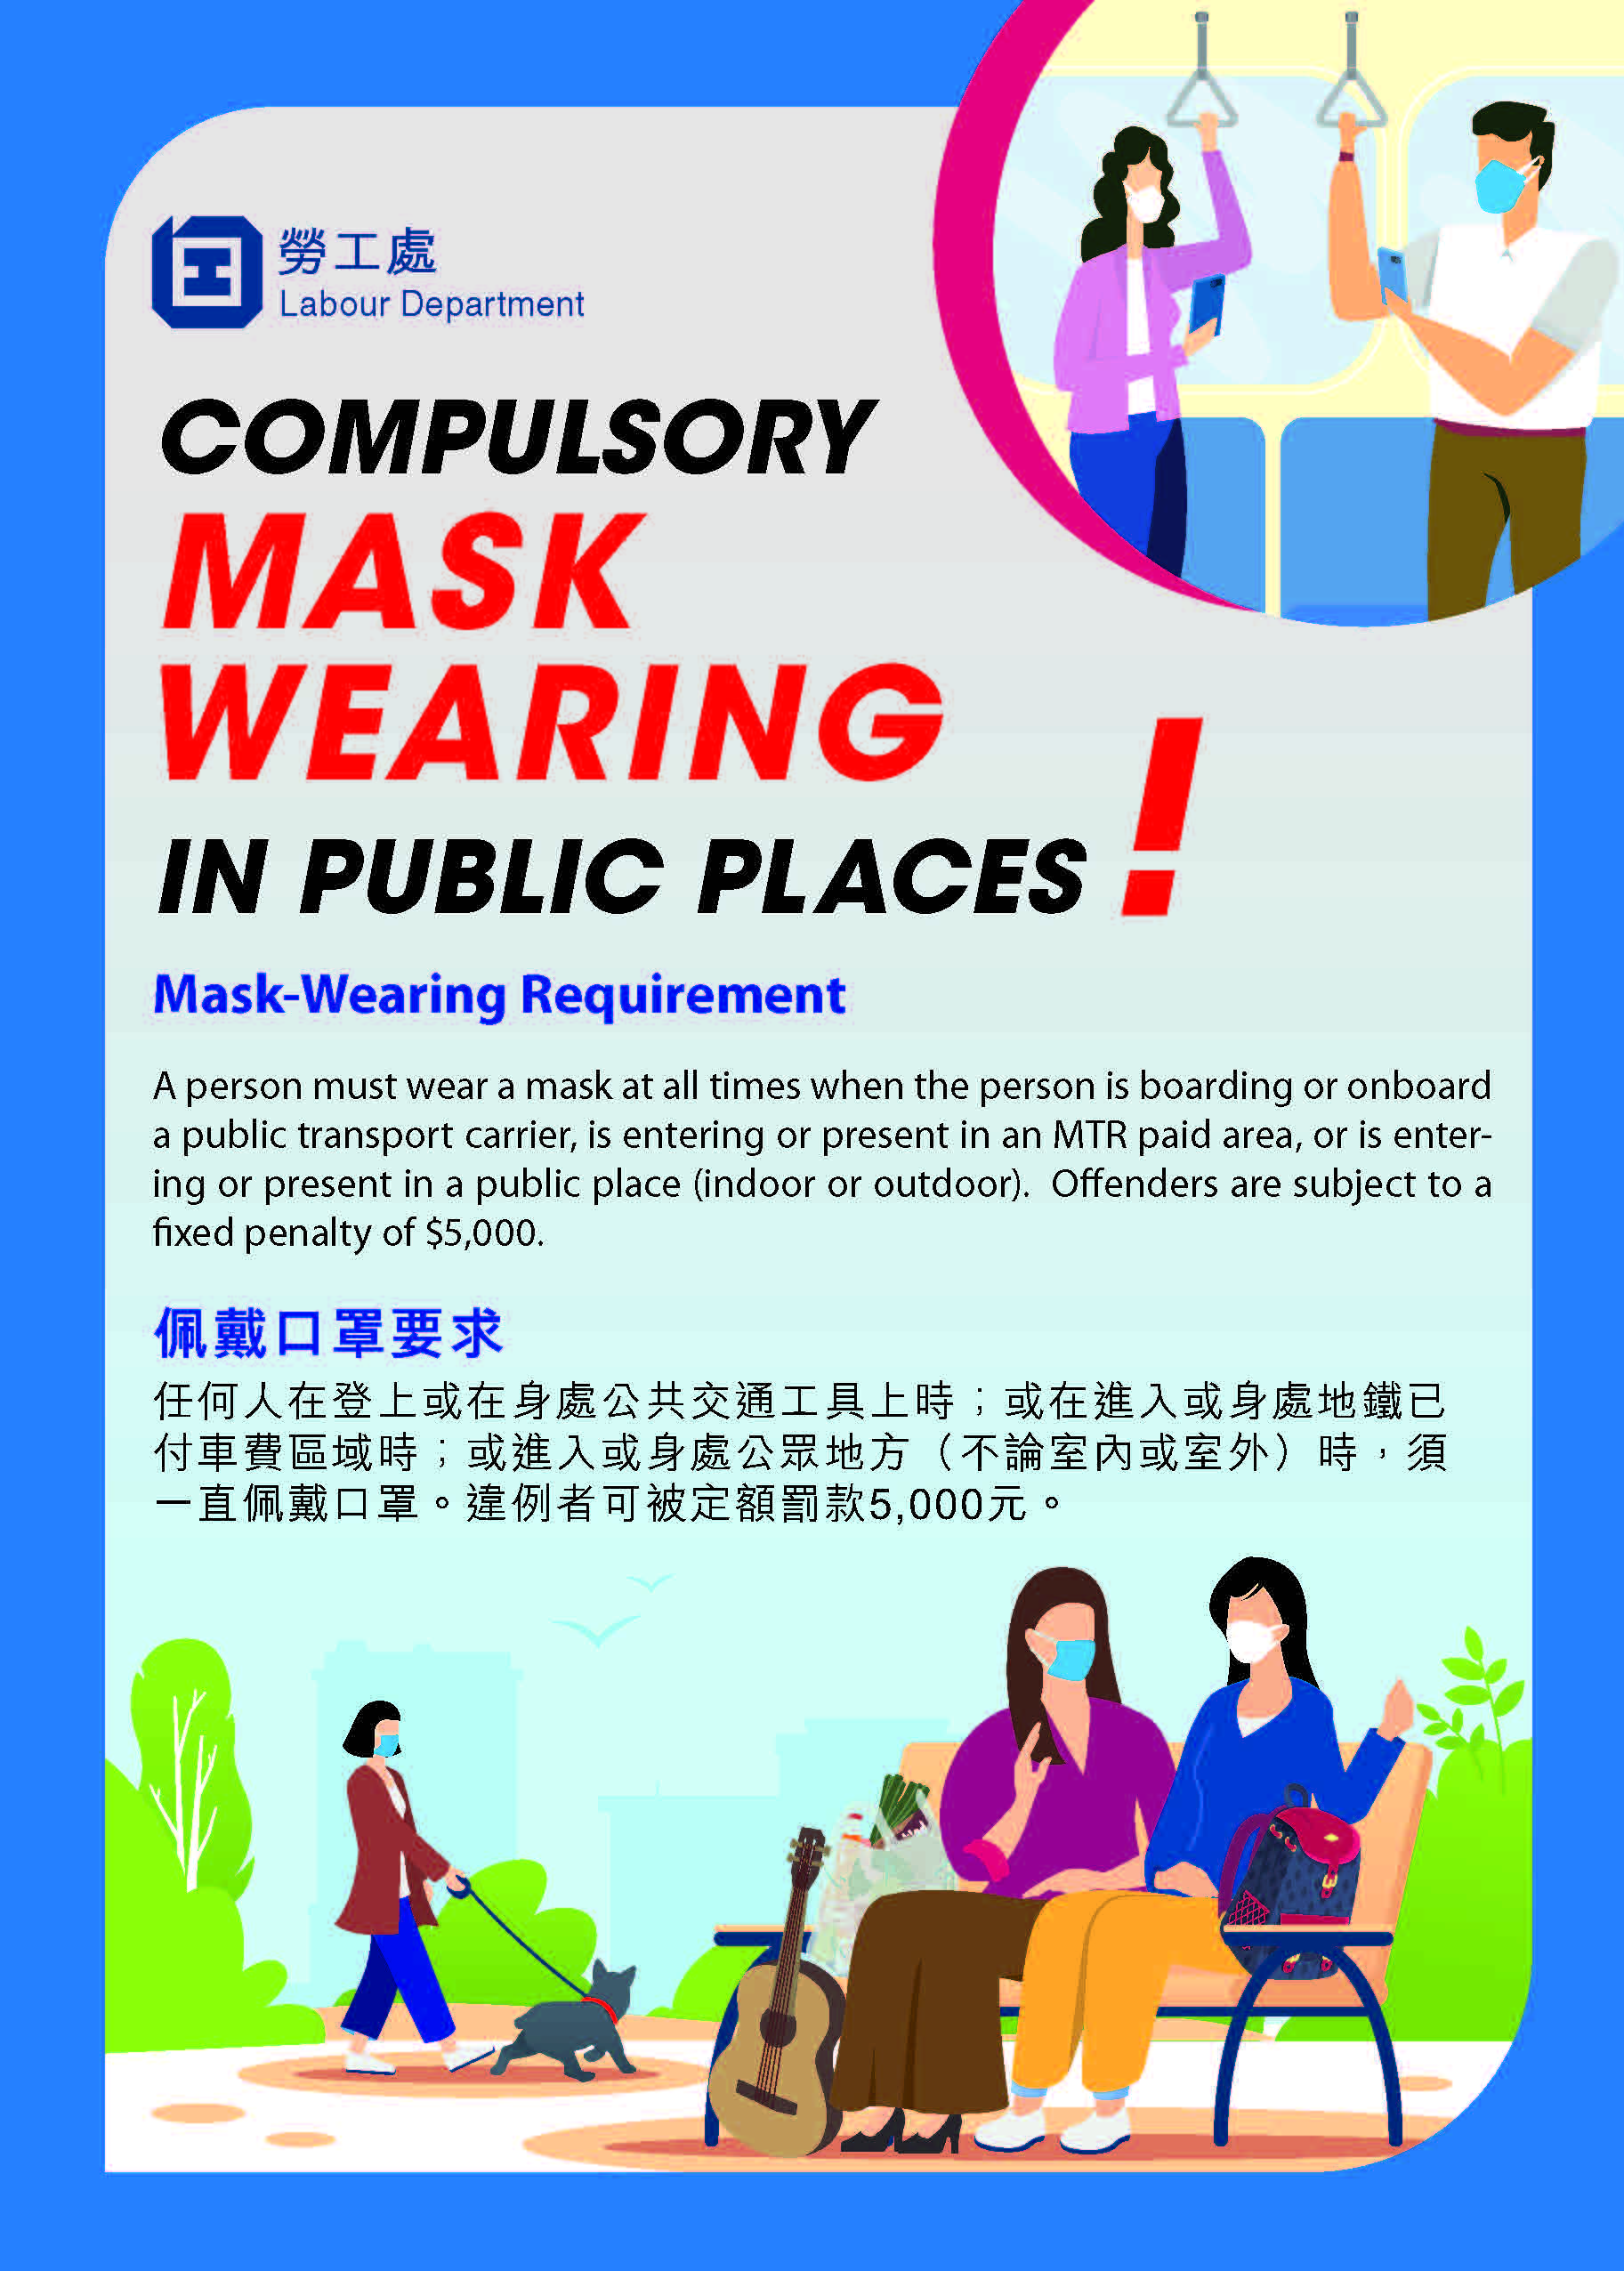 सार्वजनिक स्थानों में अनिवार्यतः मास्क पहने"